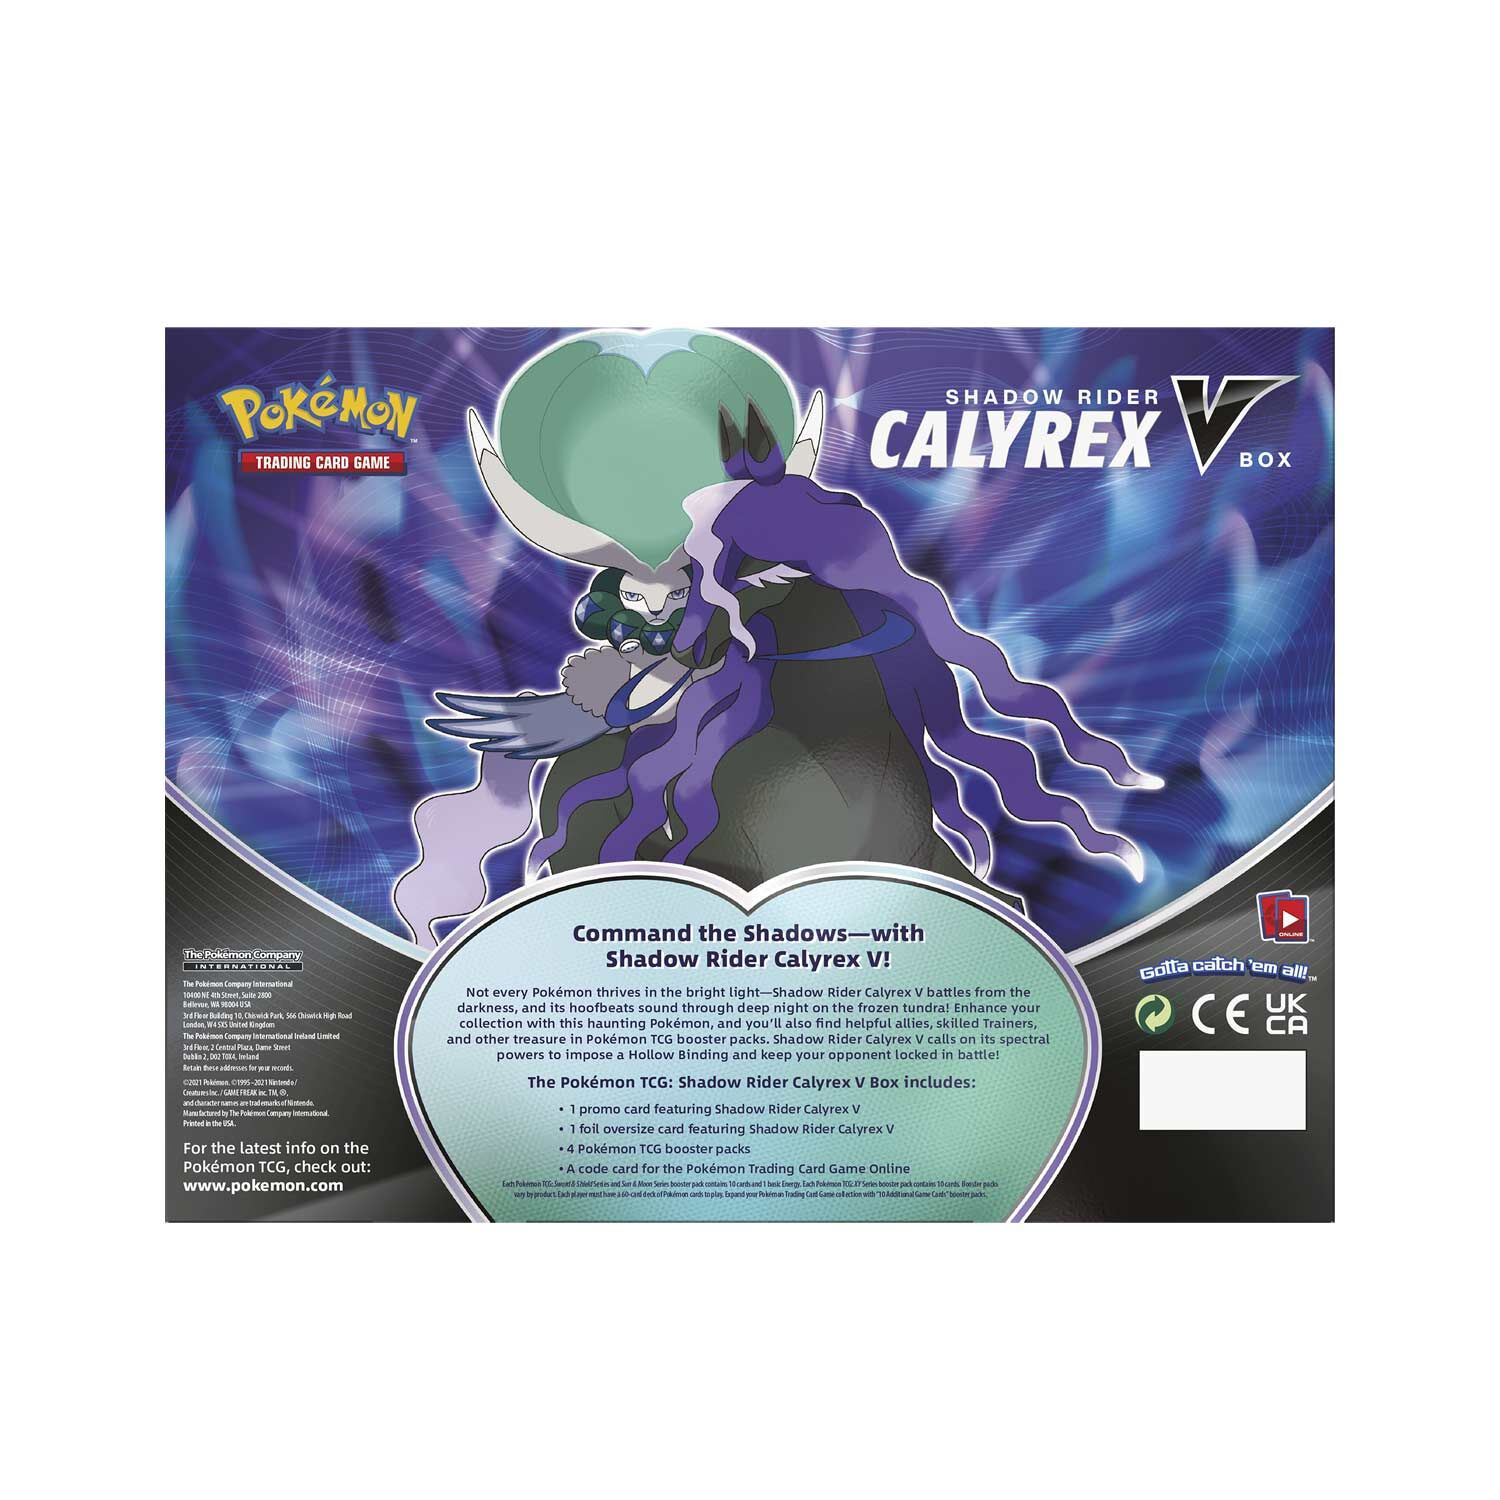 Pokémon Shadow Rider Calyrex V Collection Box - EN